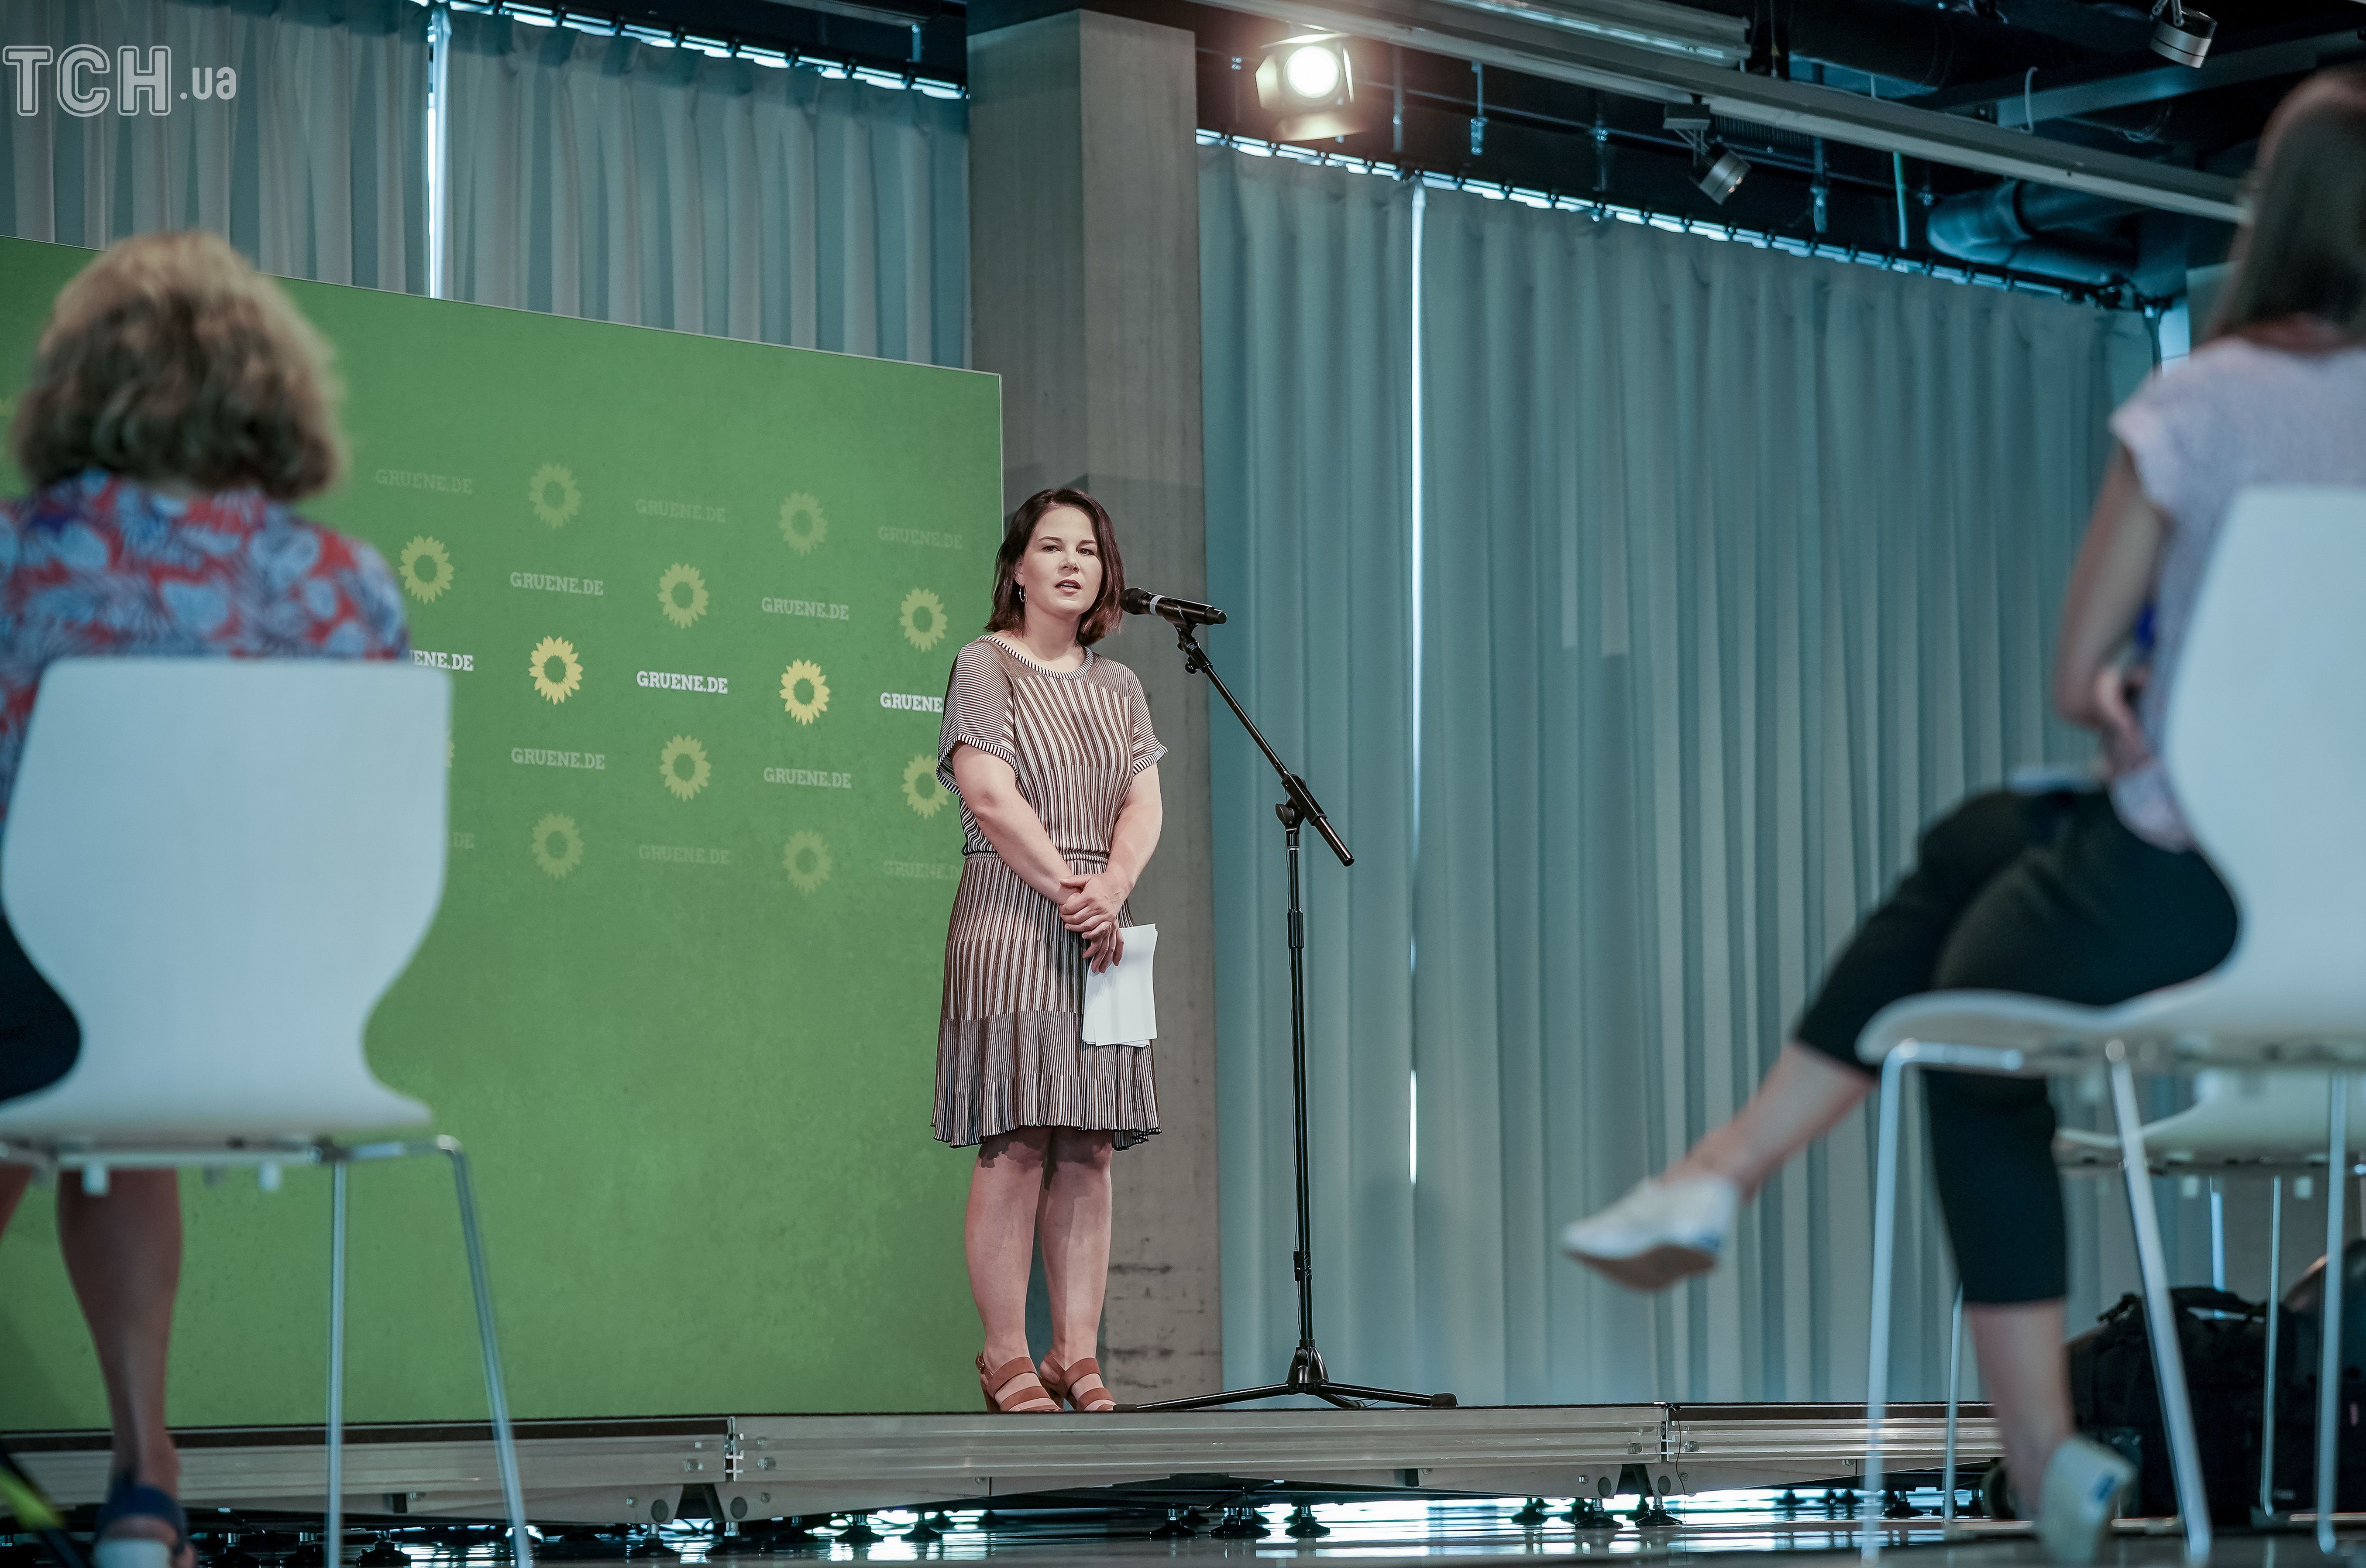 В трикотажном платье и босоножках: скромный образ лидера партии зеленых на  пресс-конференции — Общество